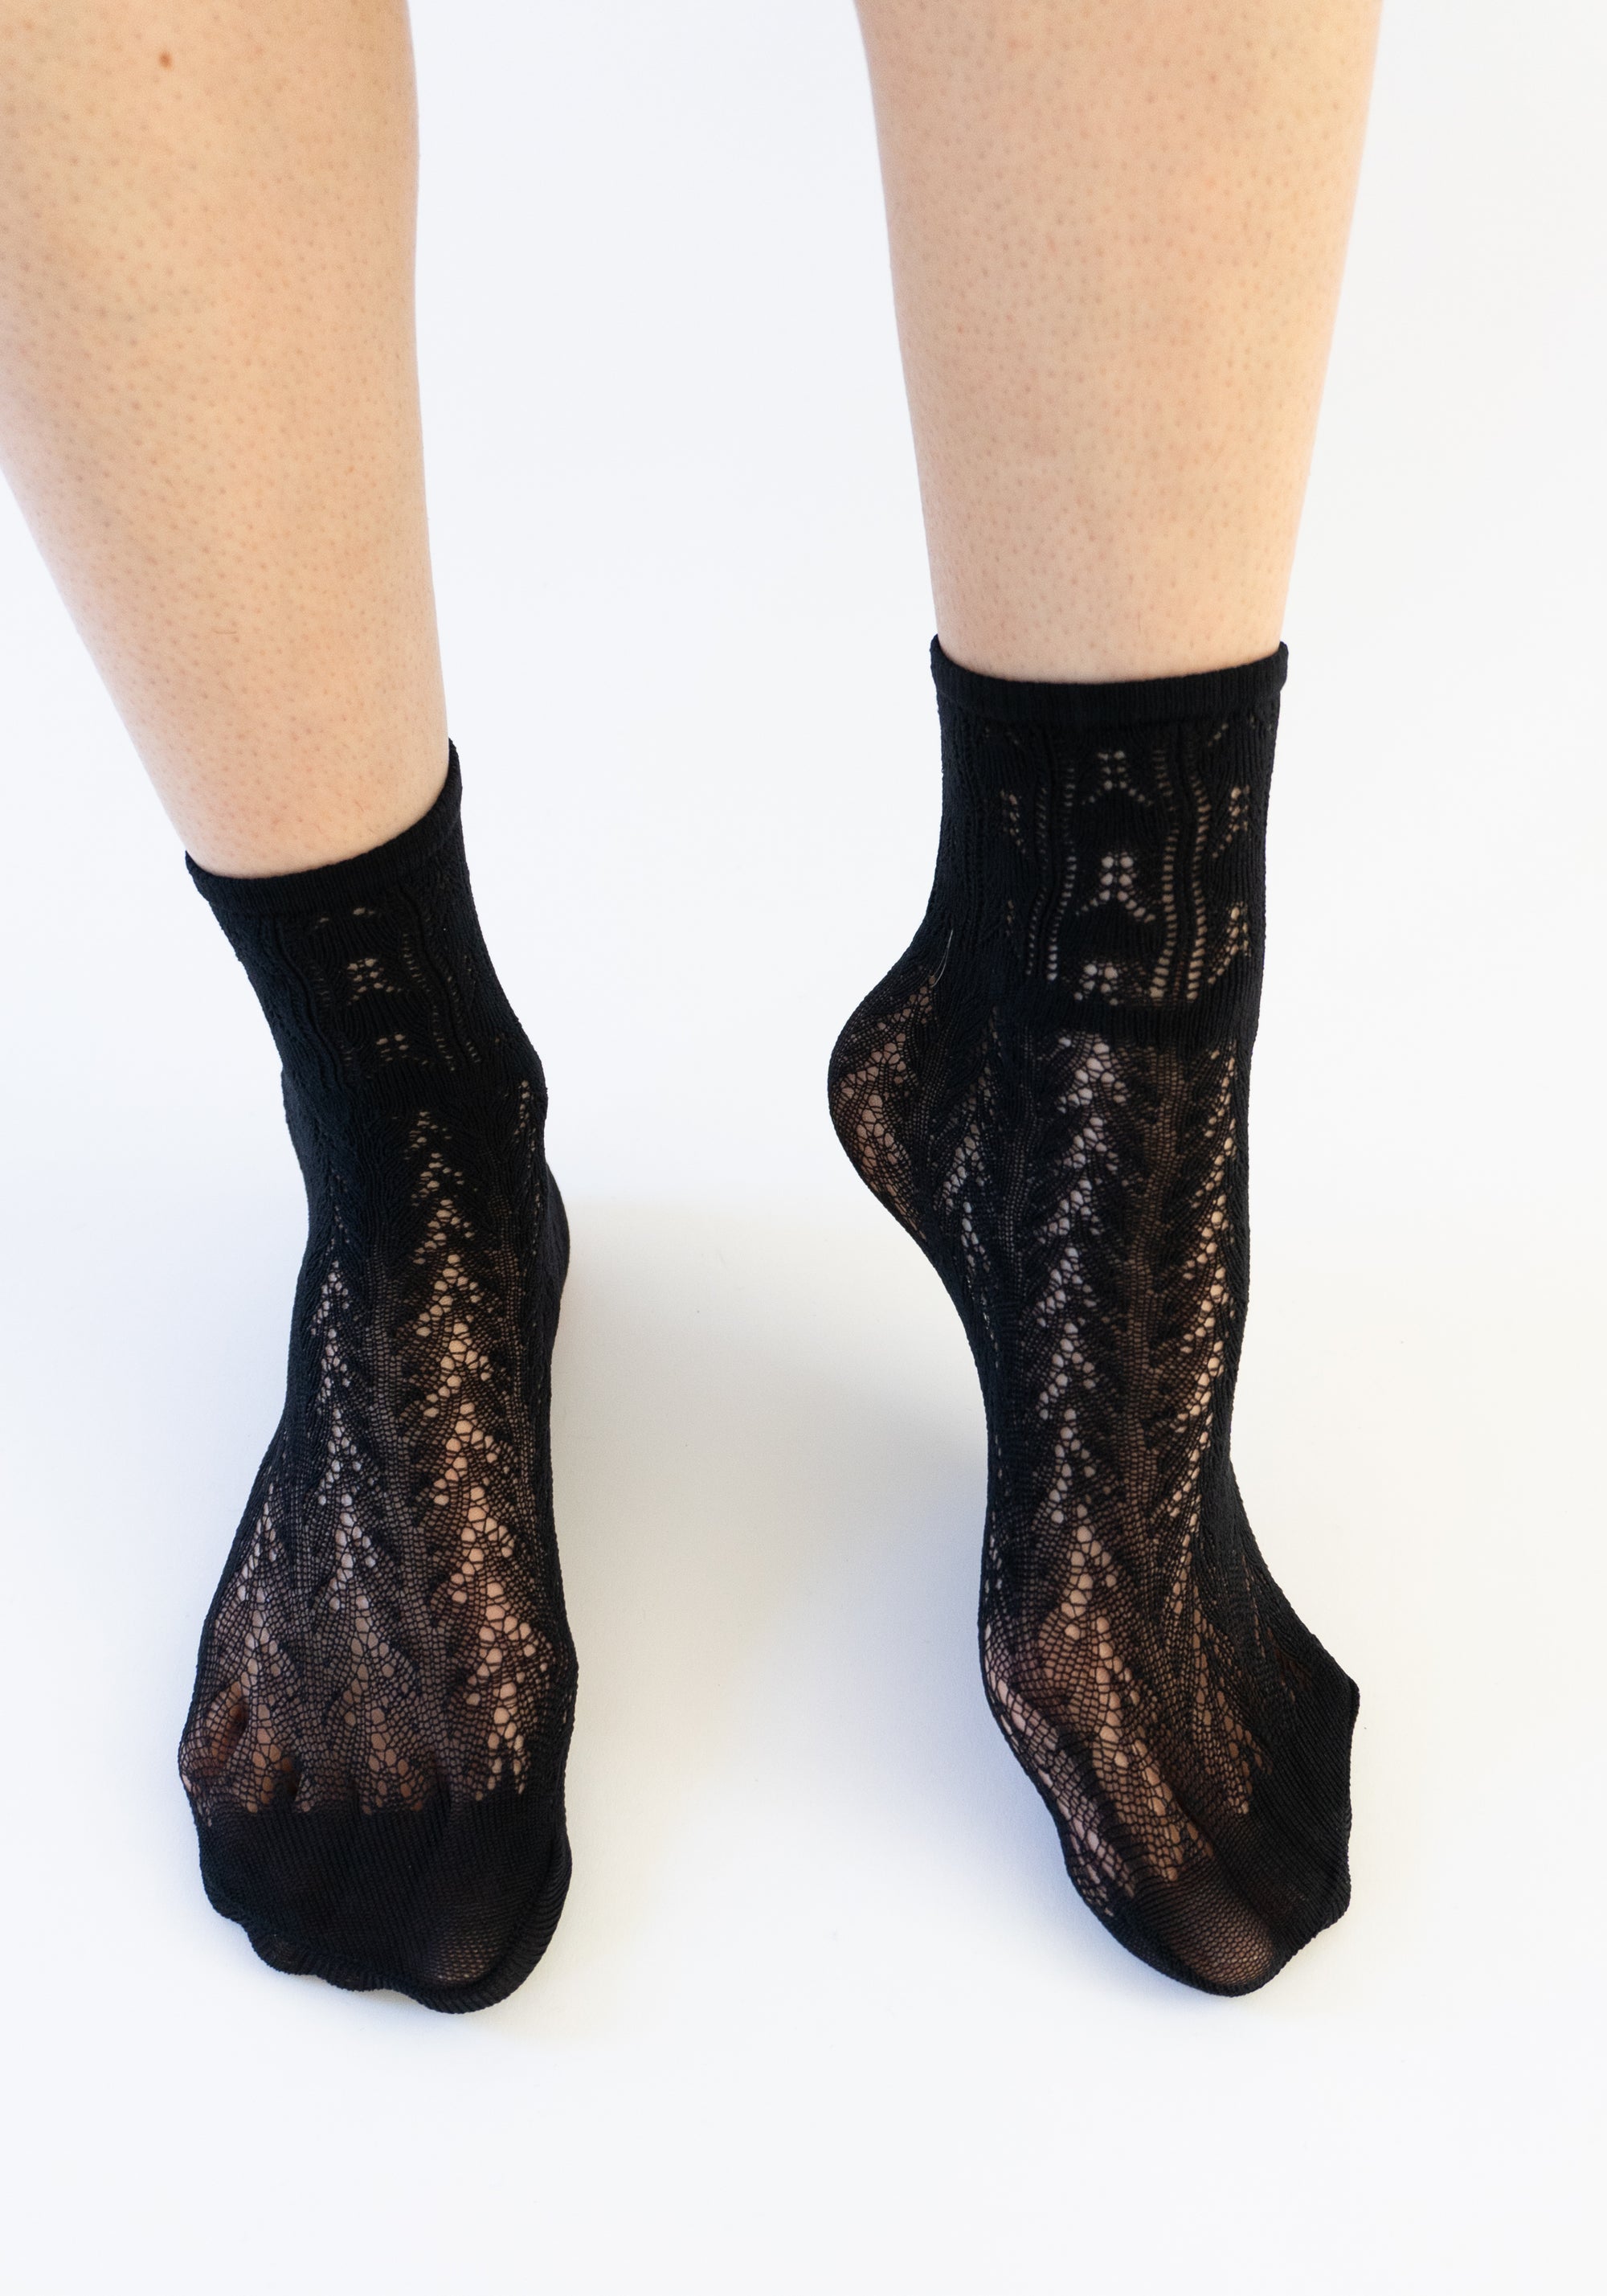 Erica Crochet Socks in Black